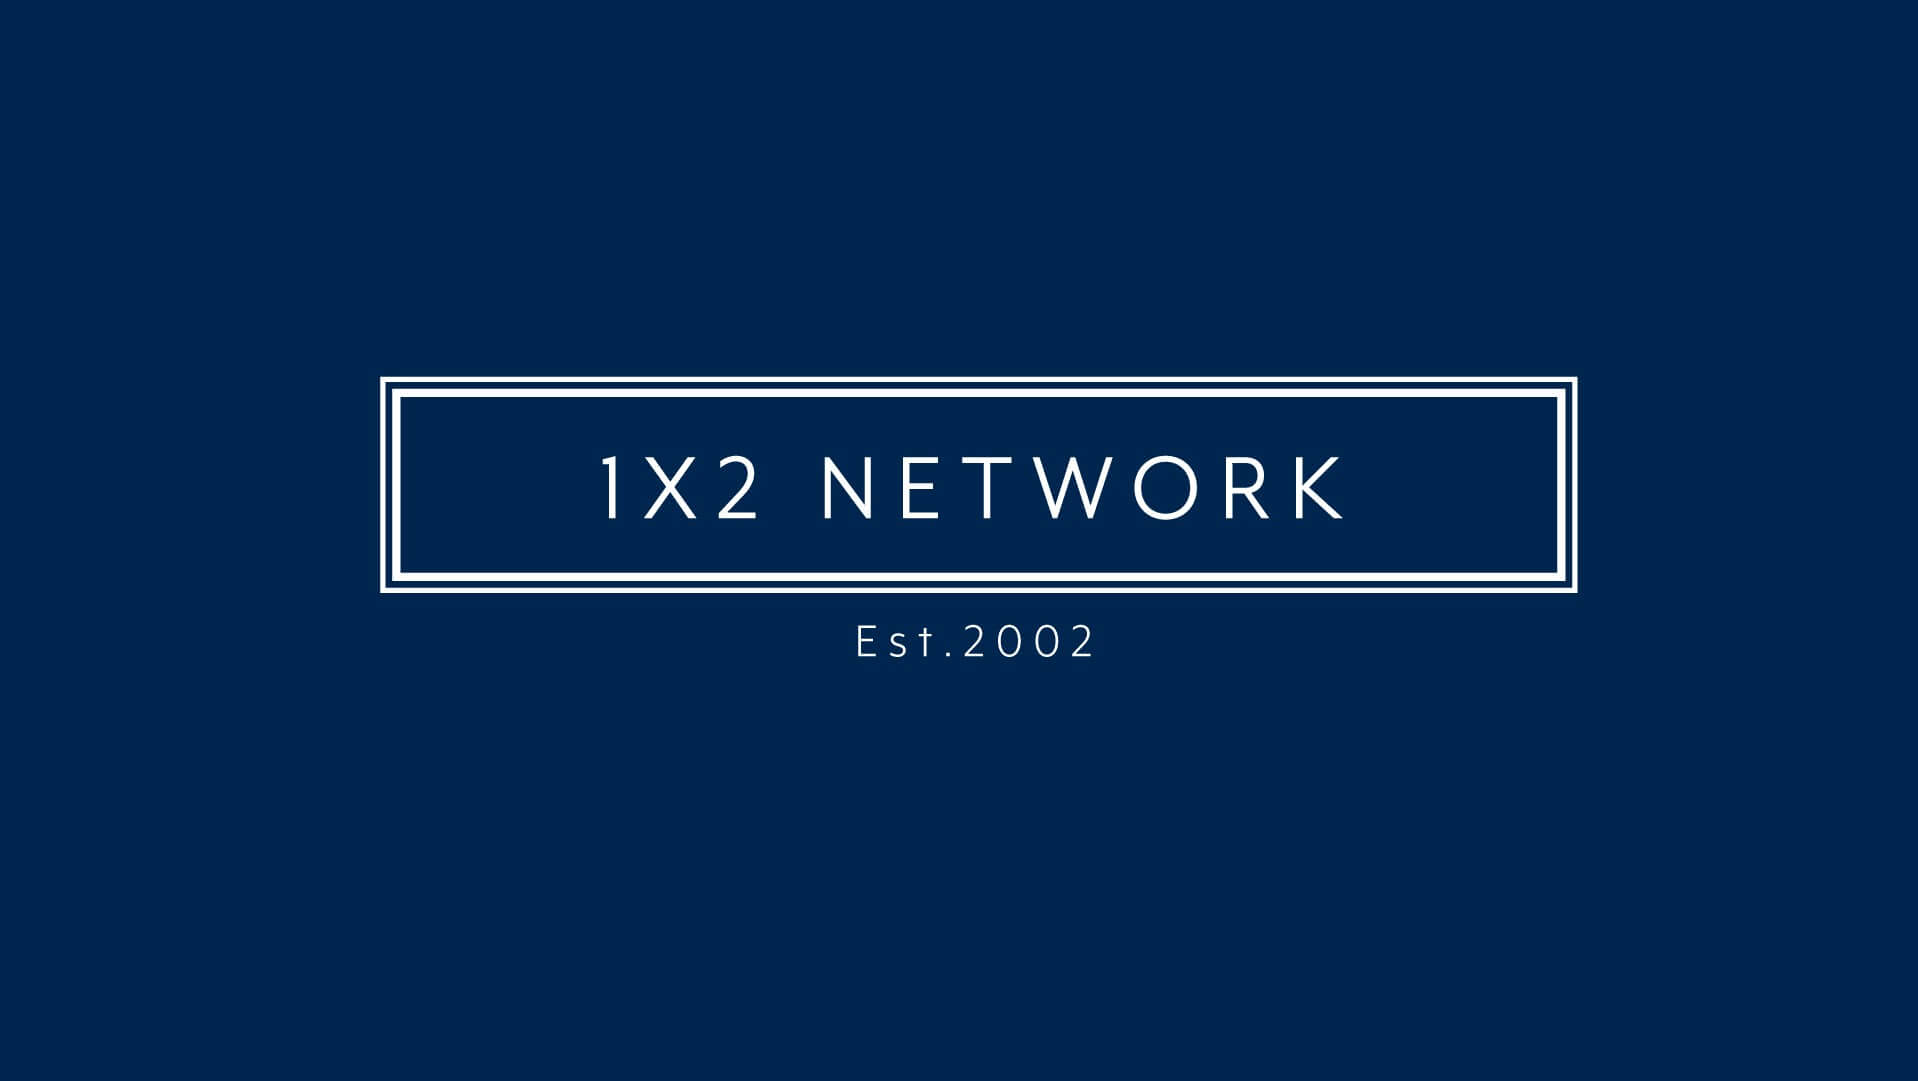 1X2 Network Brings In Brown As New Sales Director 